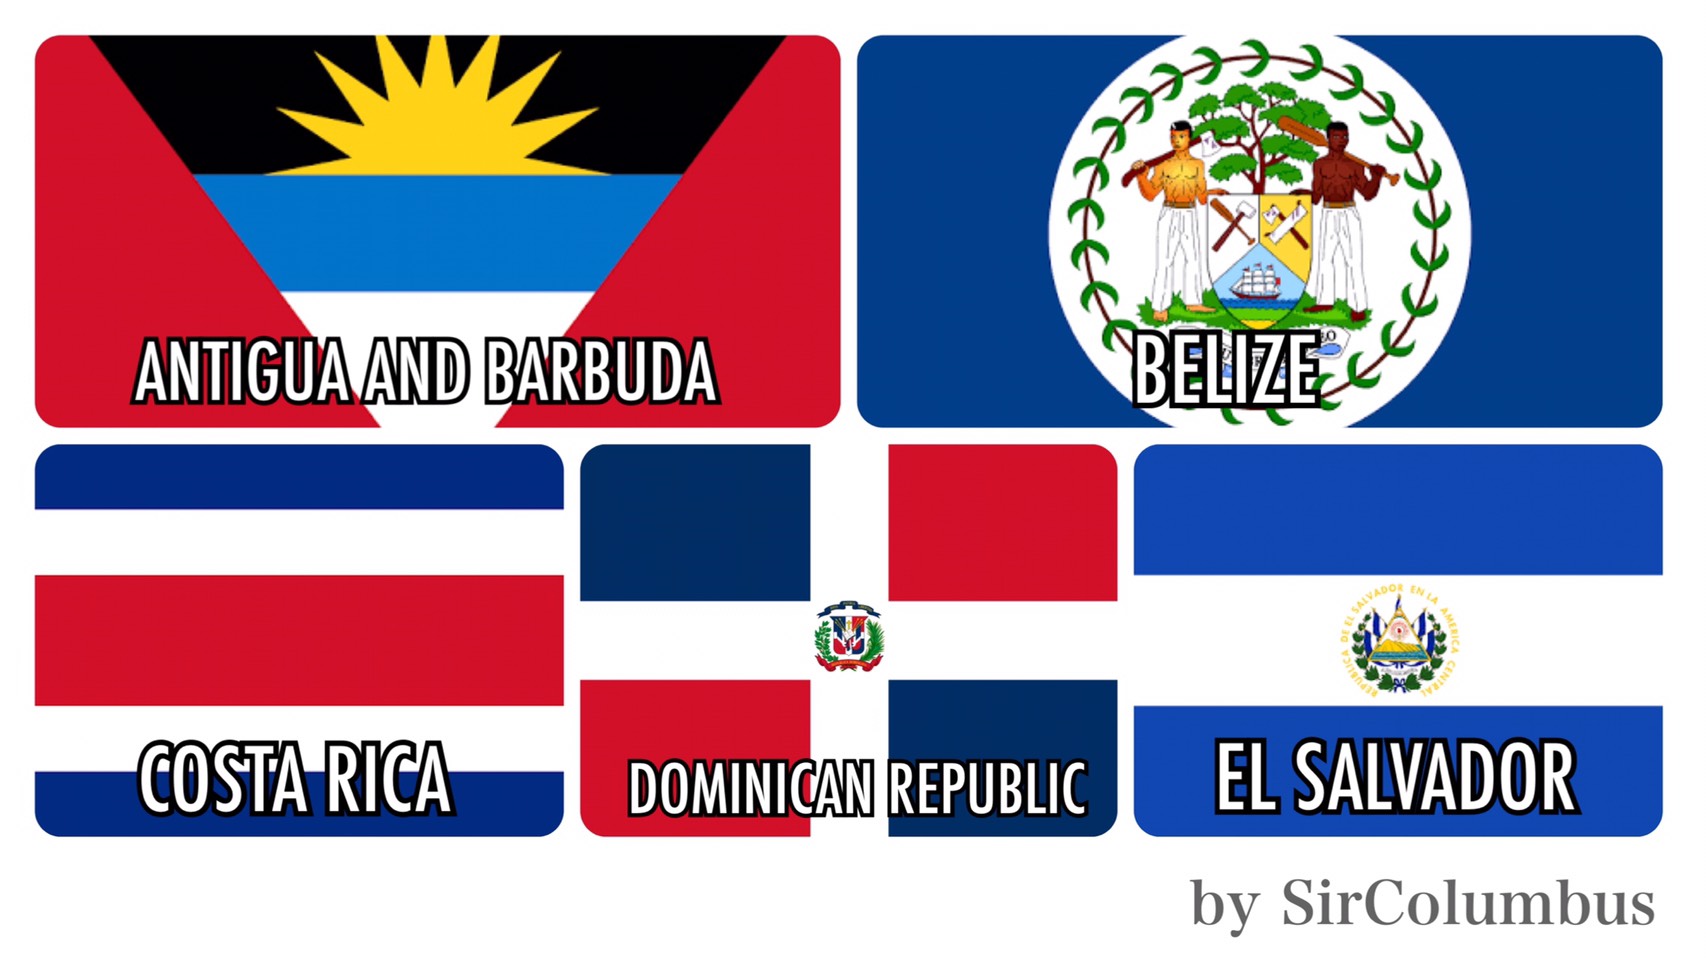 dominican republic คือ symbol